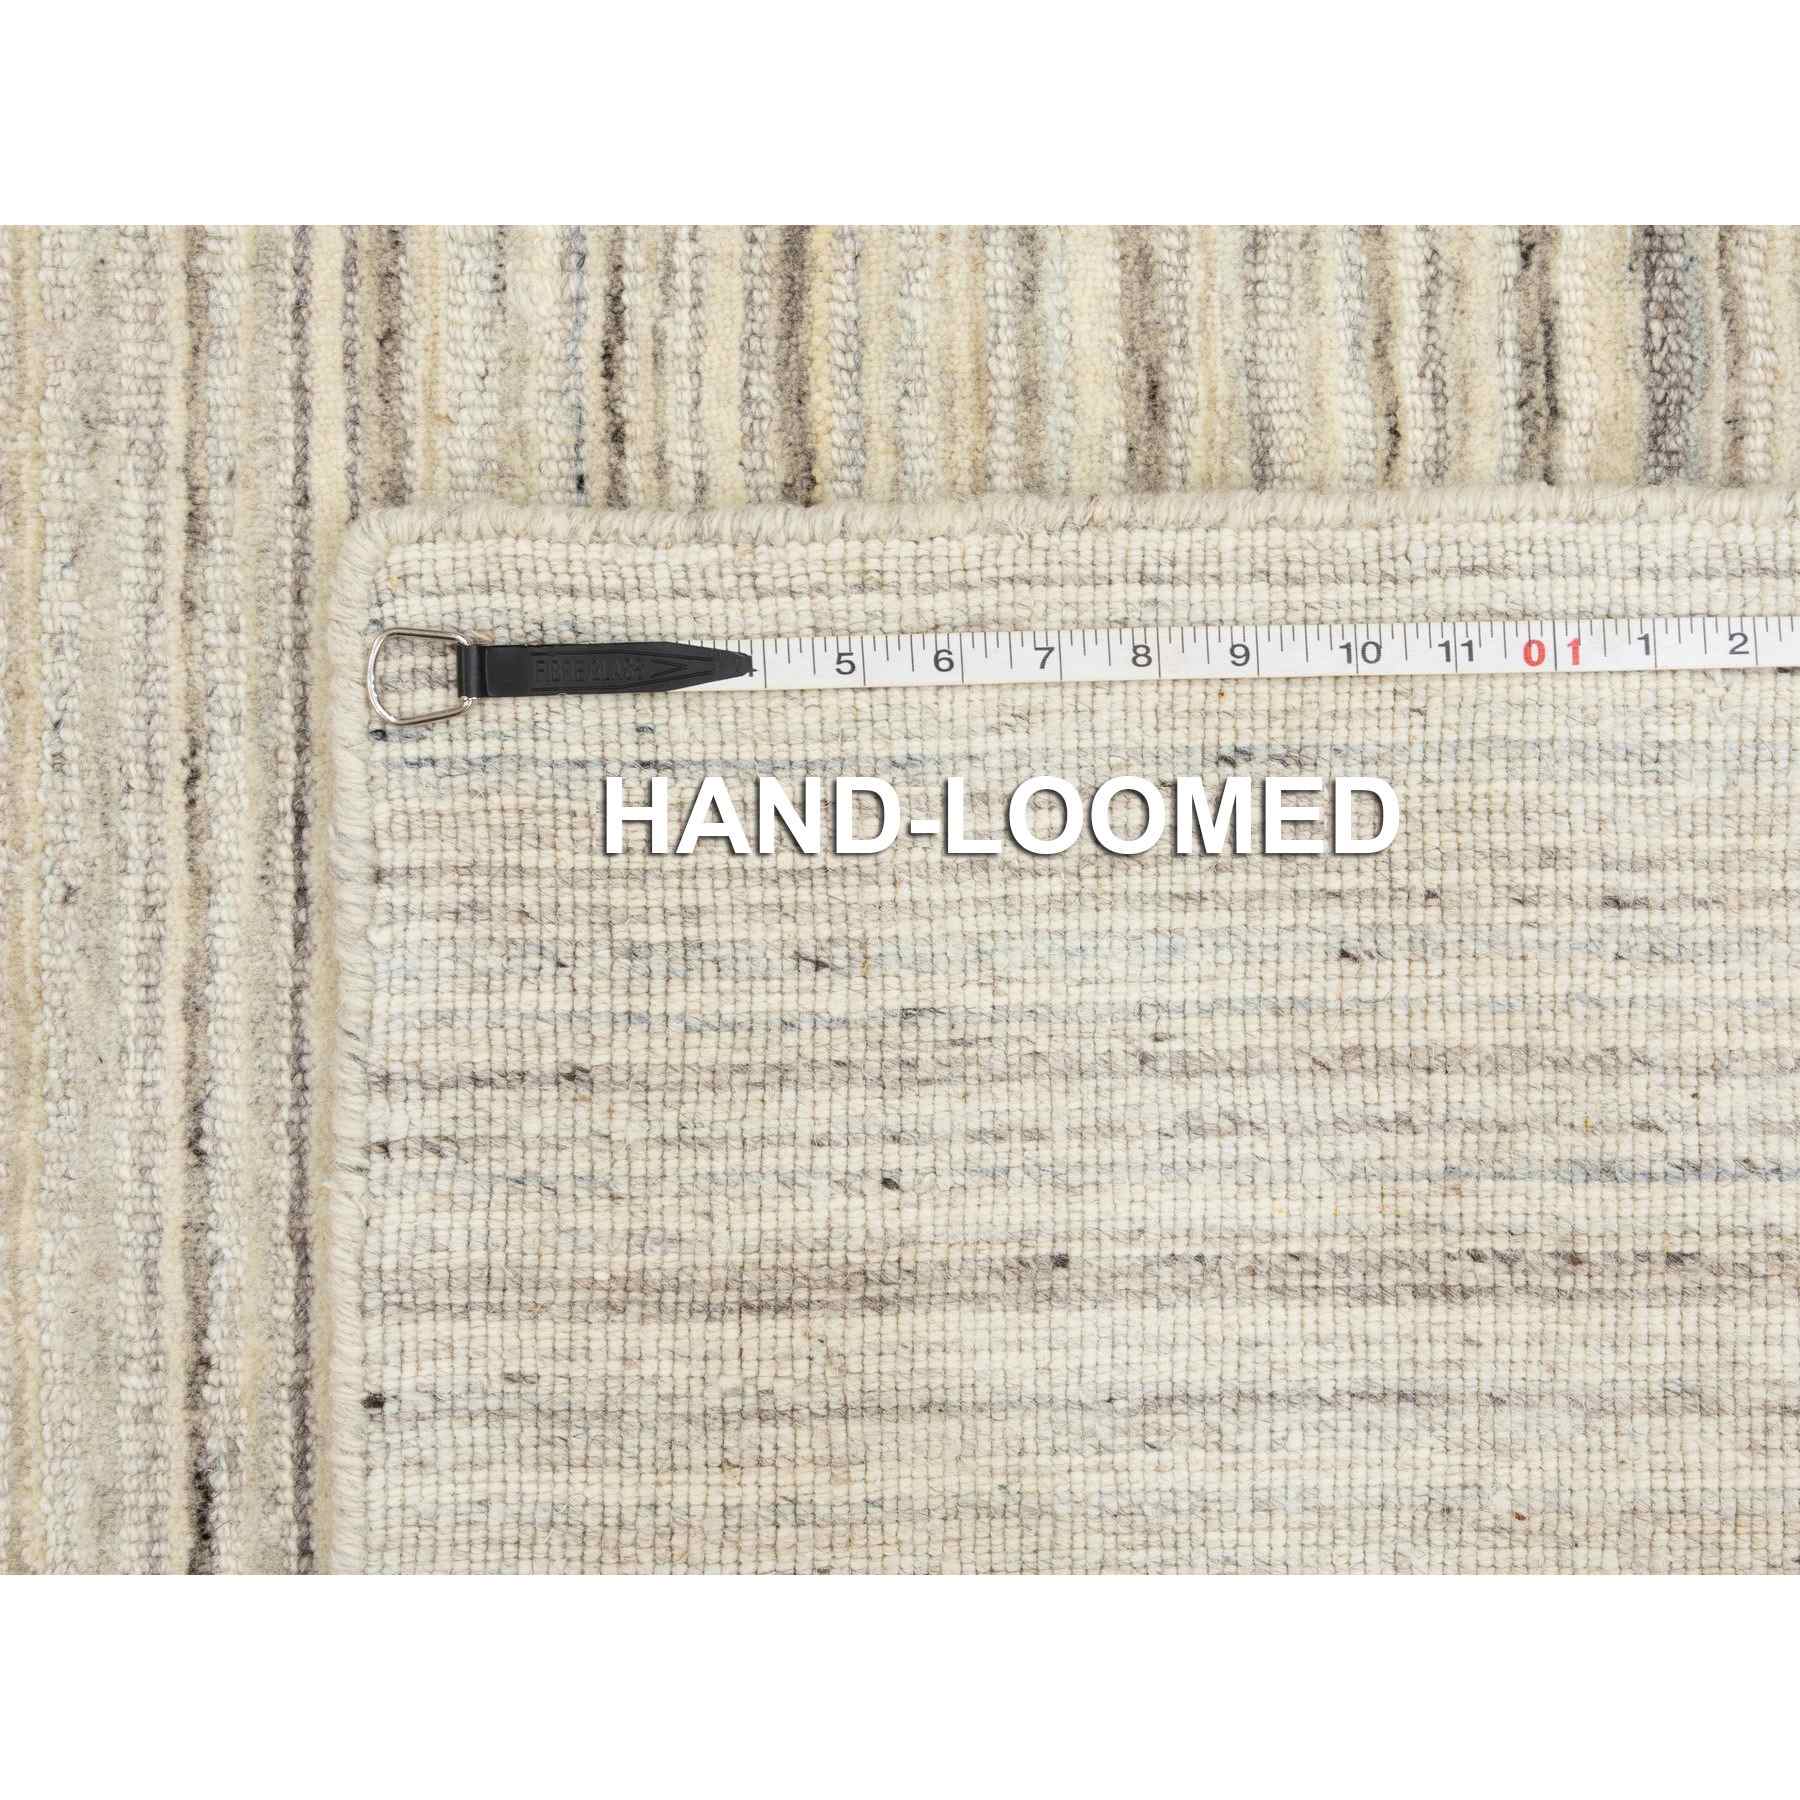 Hand-Loomed-Hand-Loomed-Rug-291755